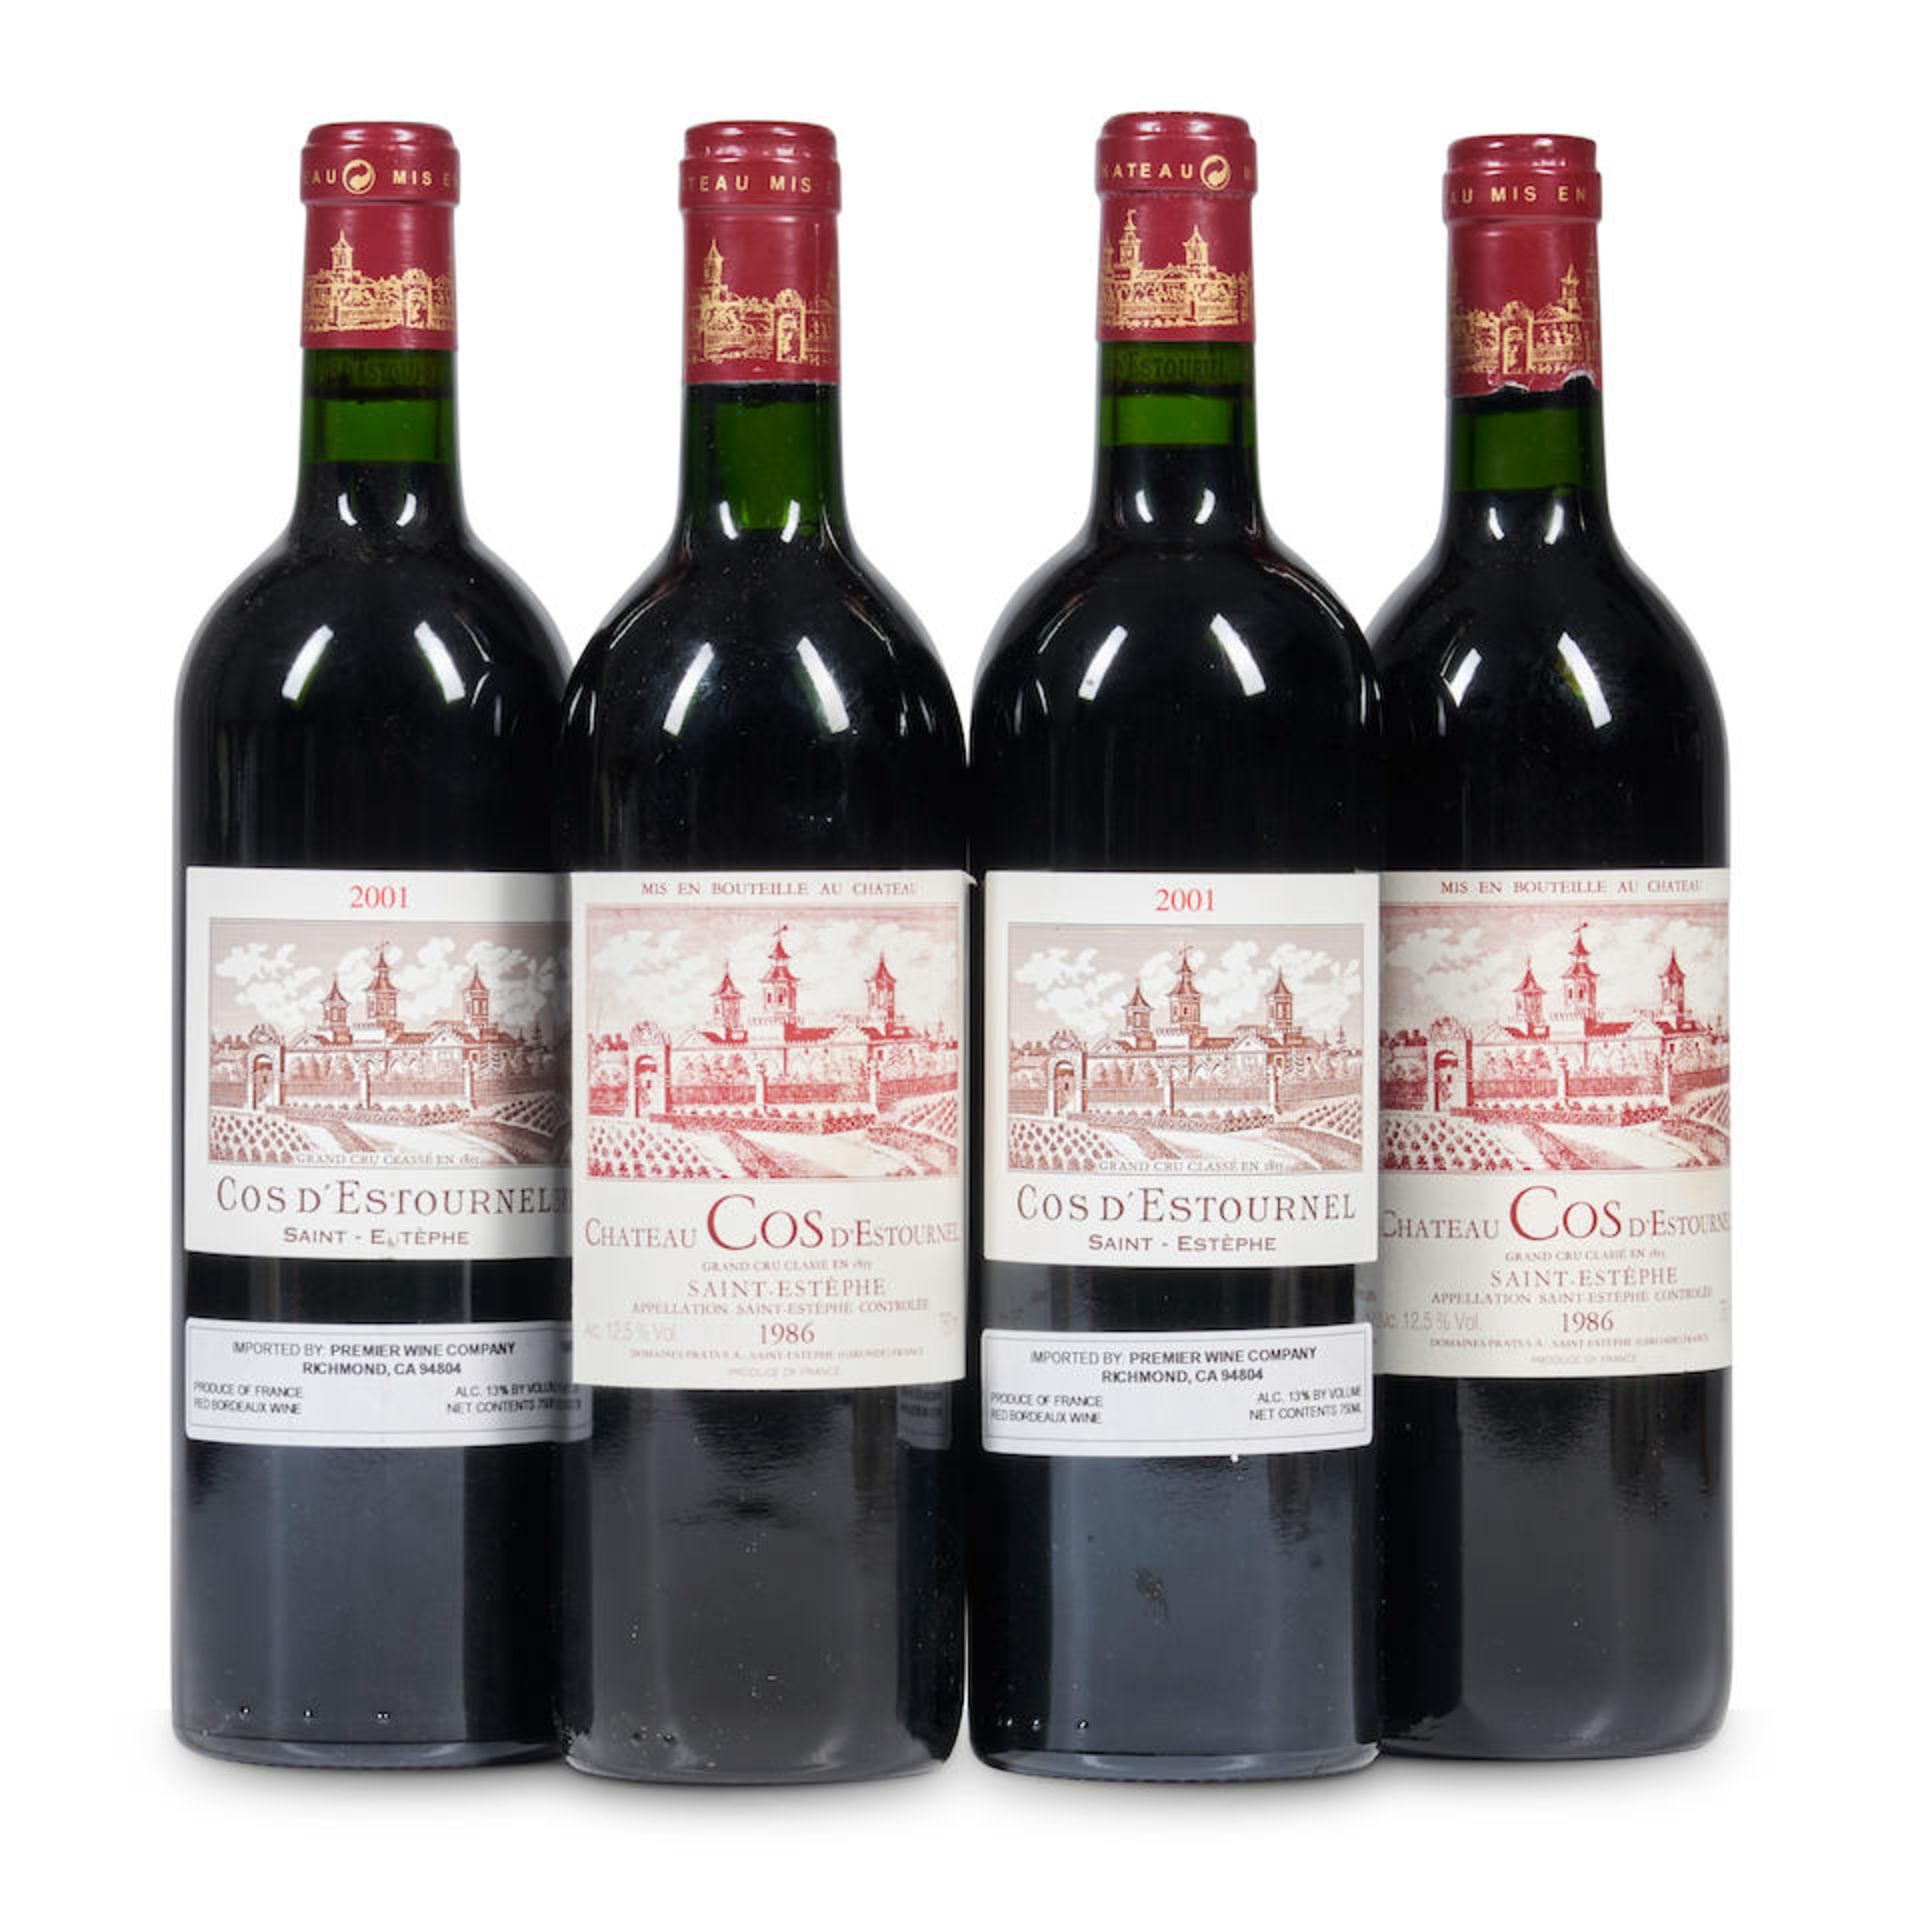 Mixed Vintage Chateau Cos d'Estournel (4 bottles)